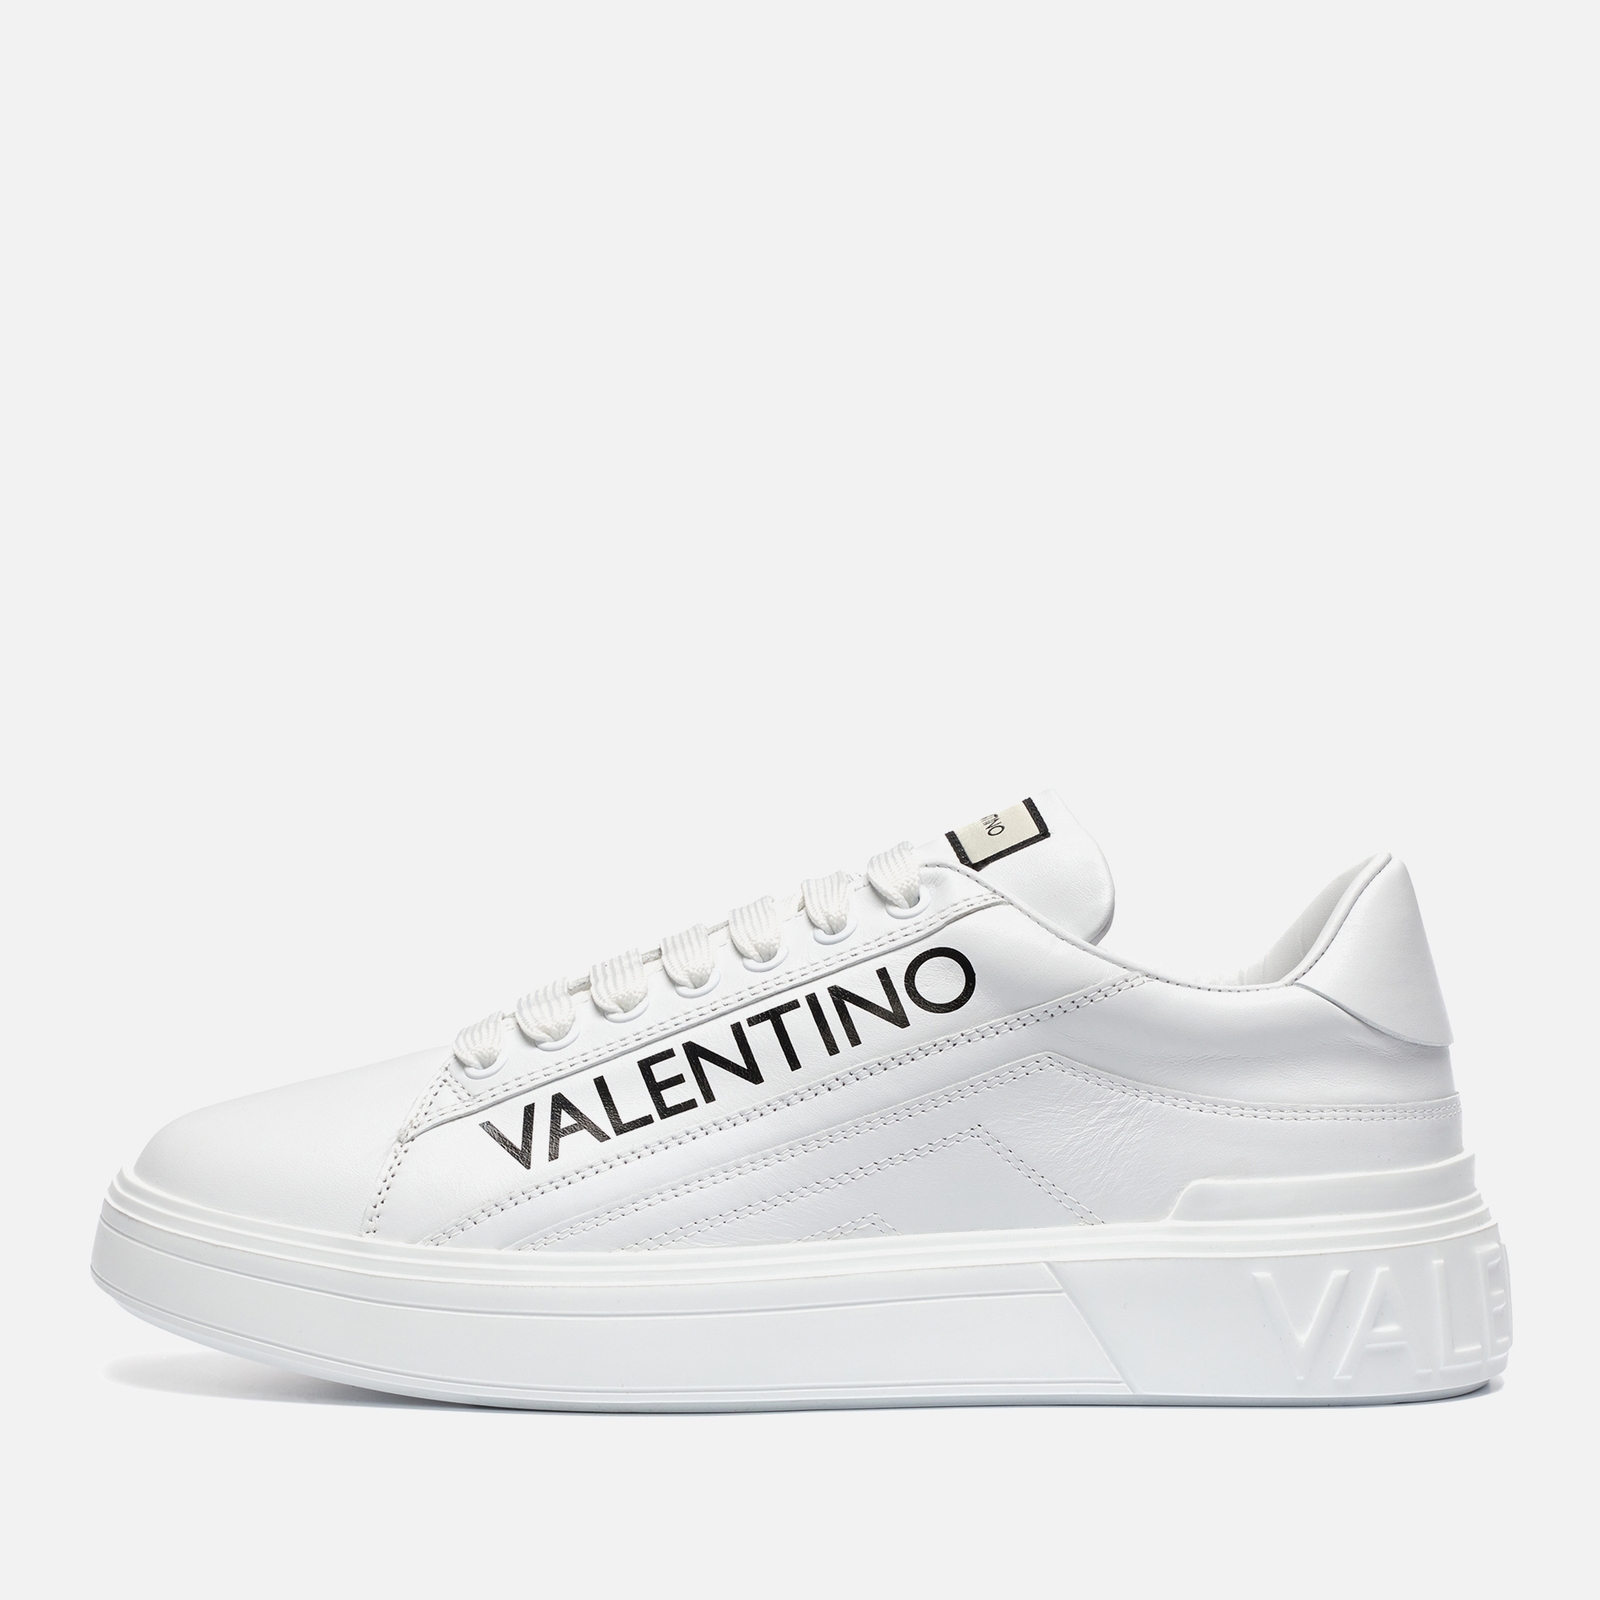 Valentino Men's Rey Leather Low Top Trainers - White/Black - 11 von Valentino